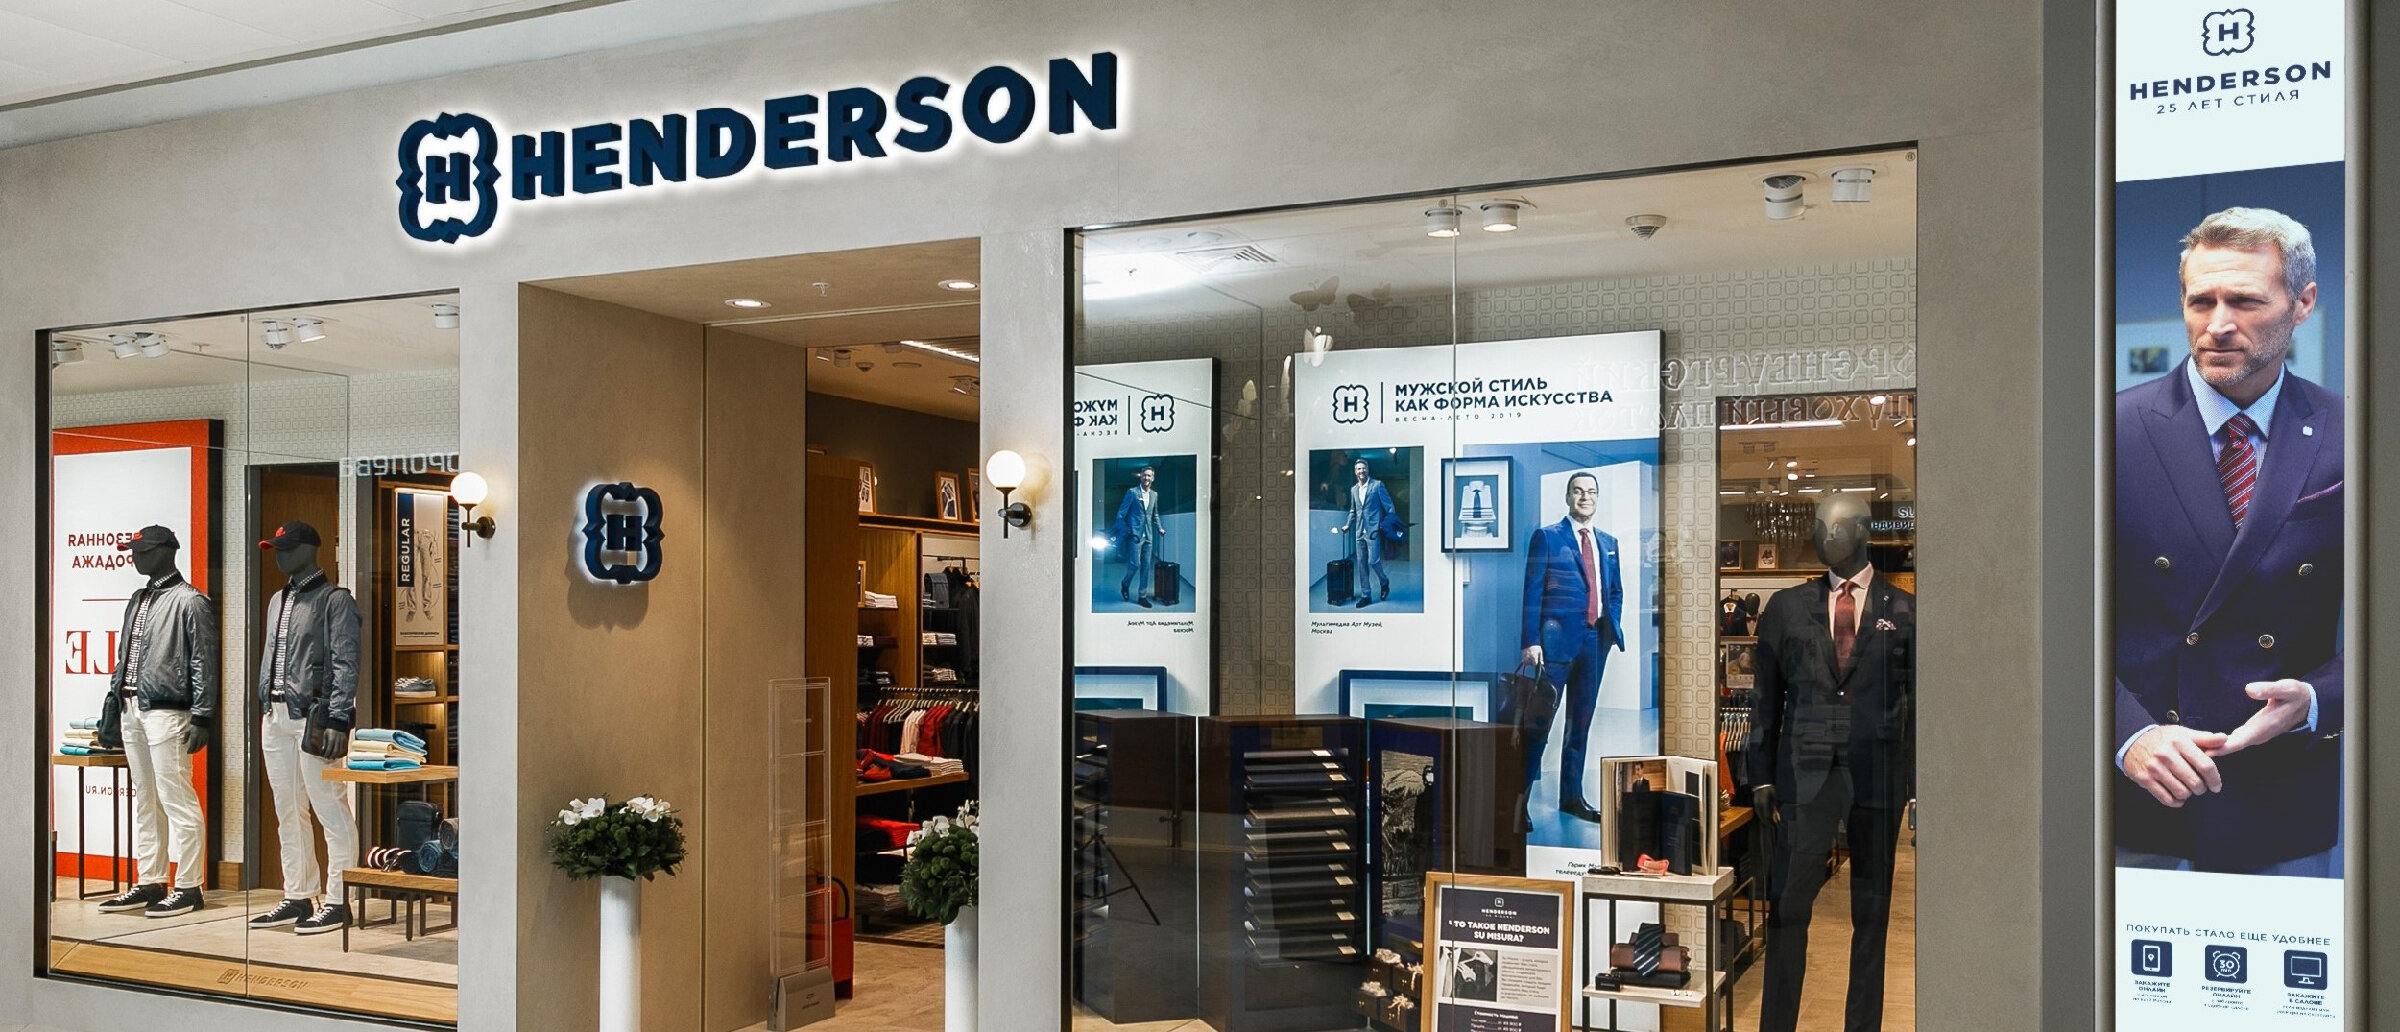 IPO Henderson